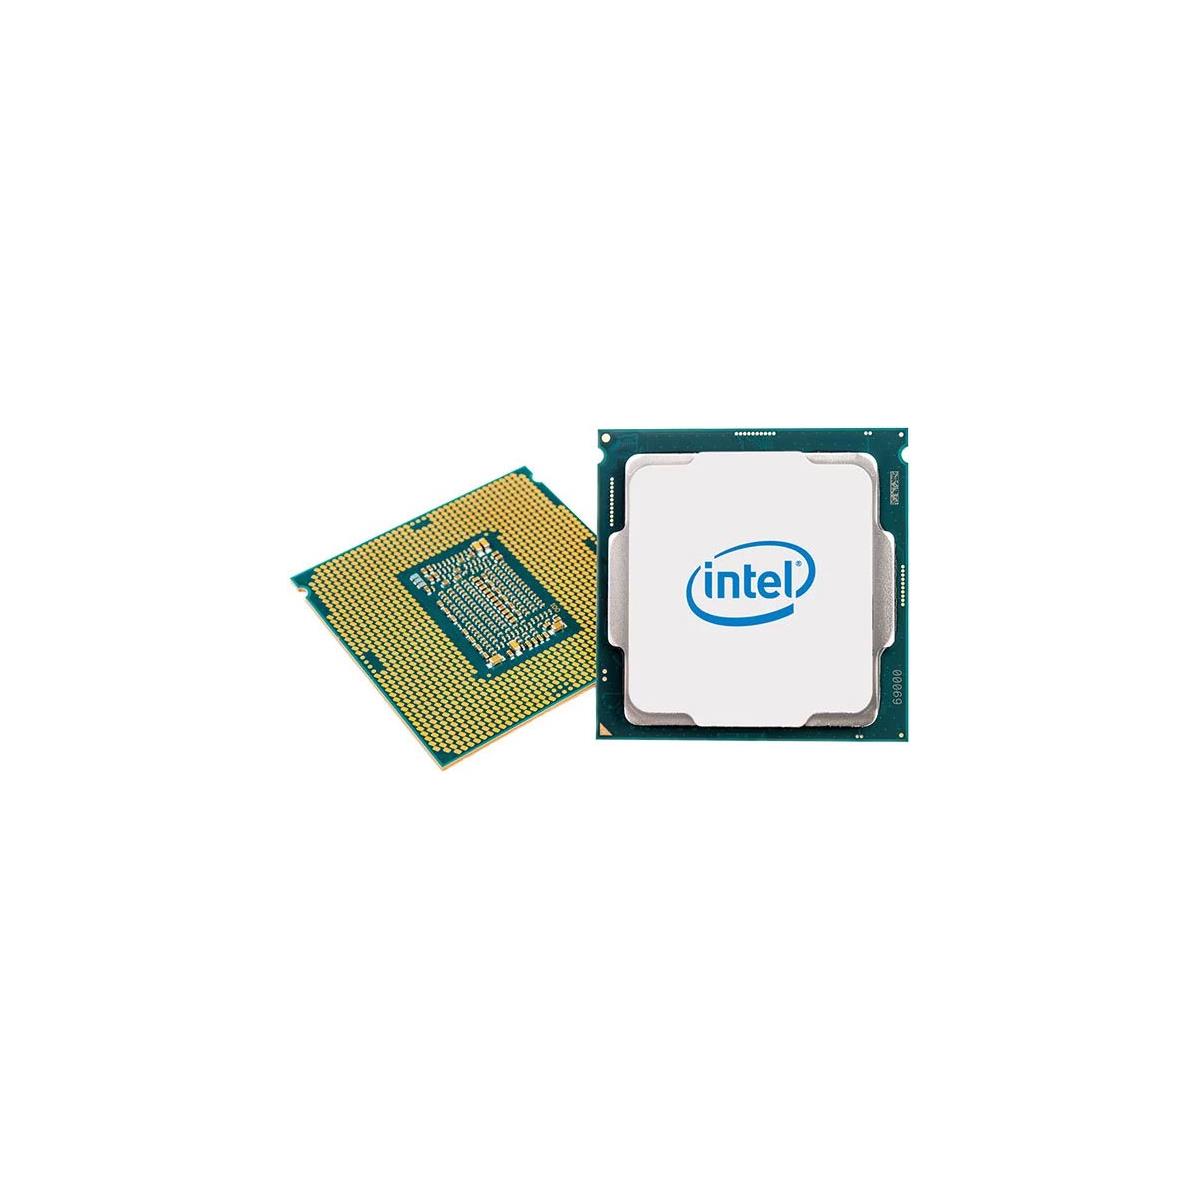 Intel 9th Gen Core i7-9700K With Z390 Motherboard Benchmarks Leak 